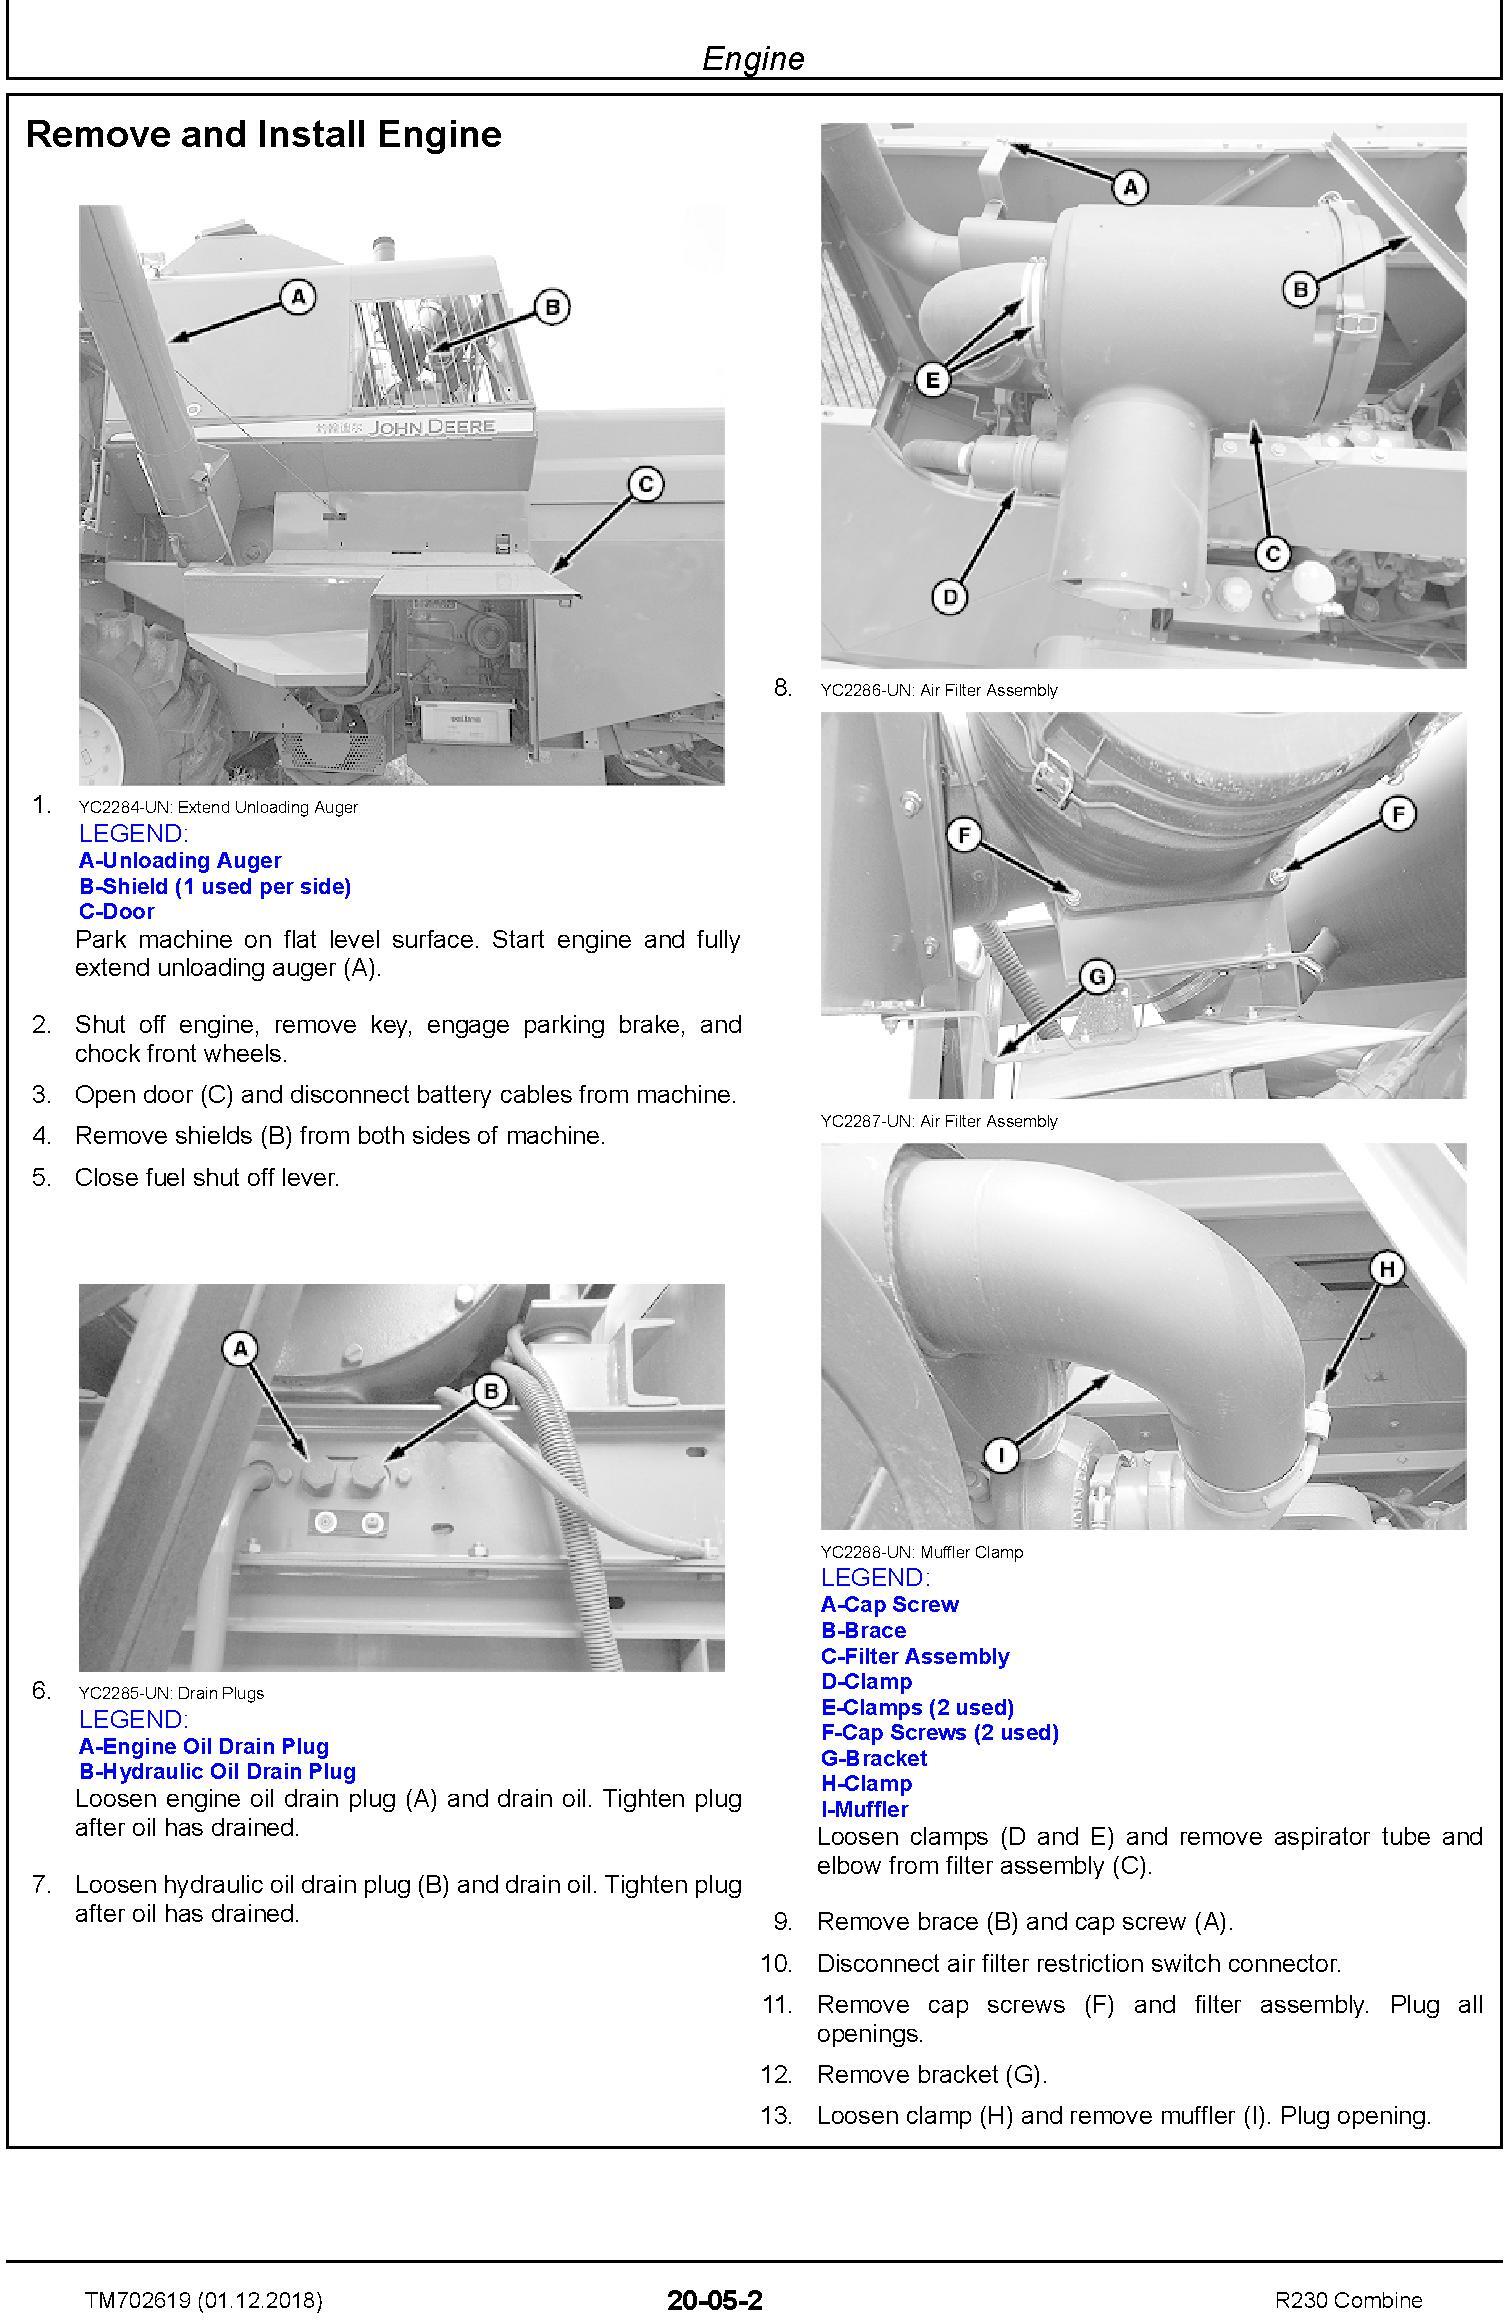 John Deere R230 Combine Technical Service Manual (TM702619) - 1